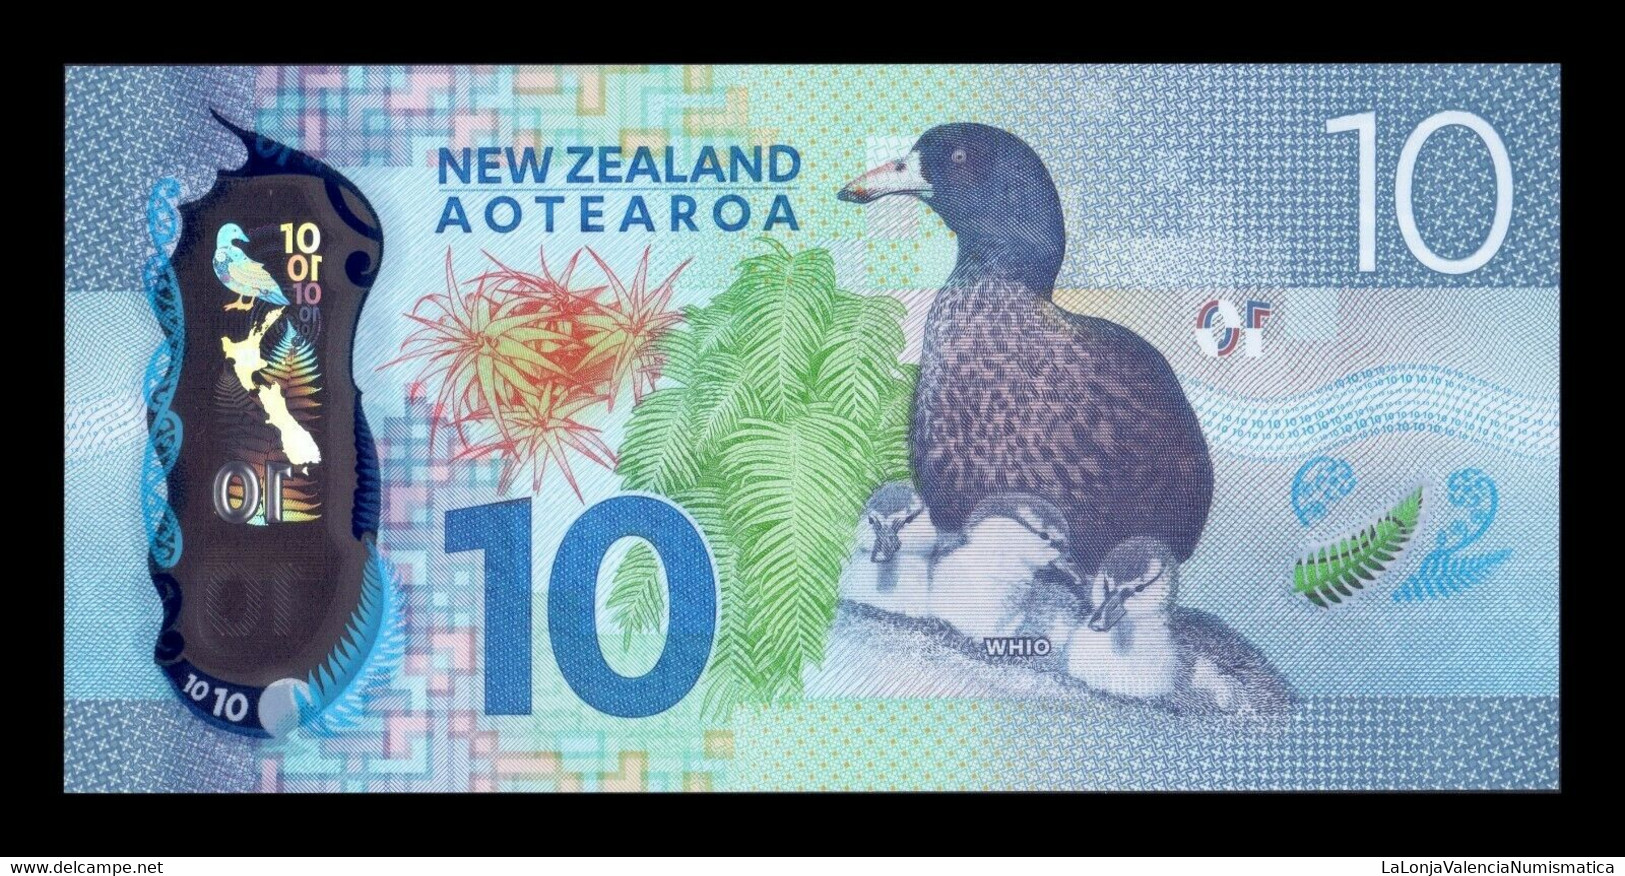 Nueva Zelanda New Zealand 10 Dollars 2015 Pick 192 Polymer SC UNC - Nueva Zelandía